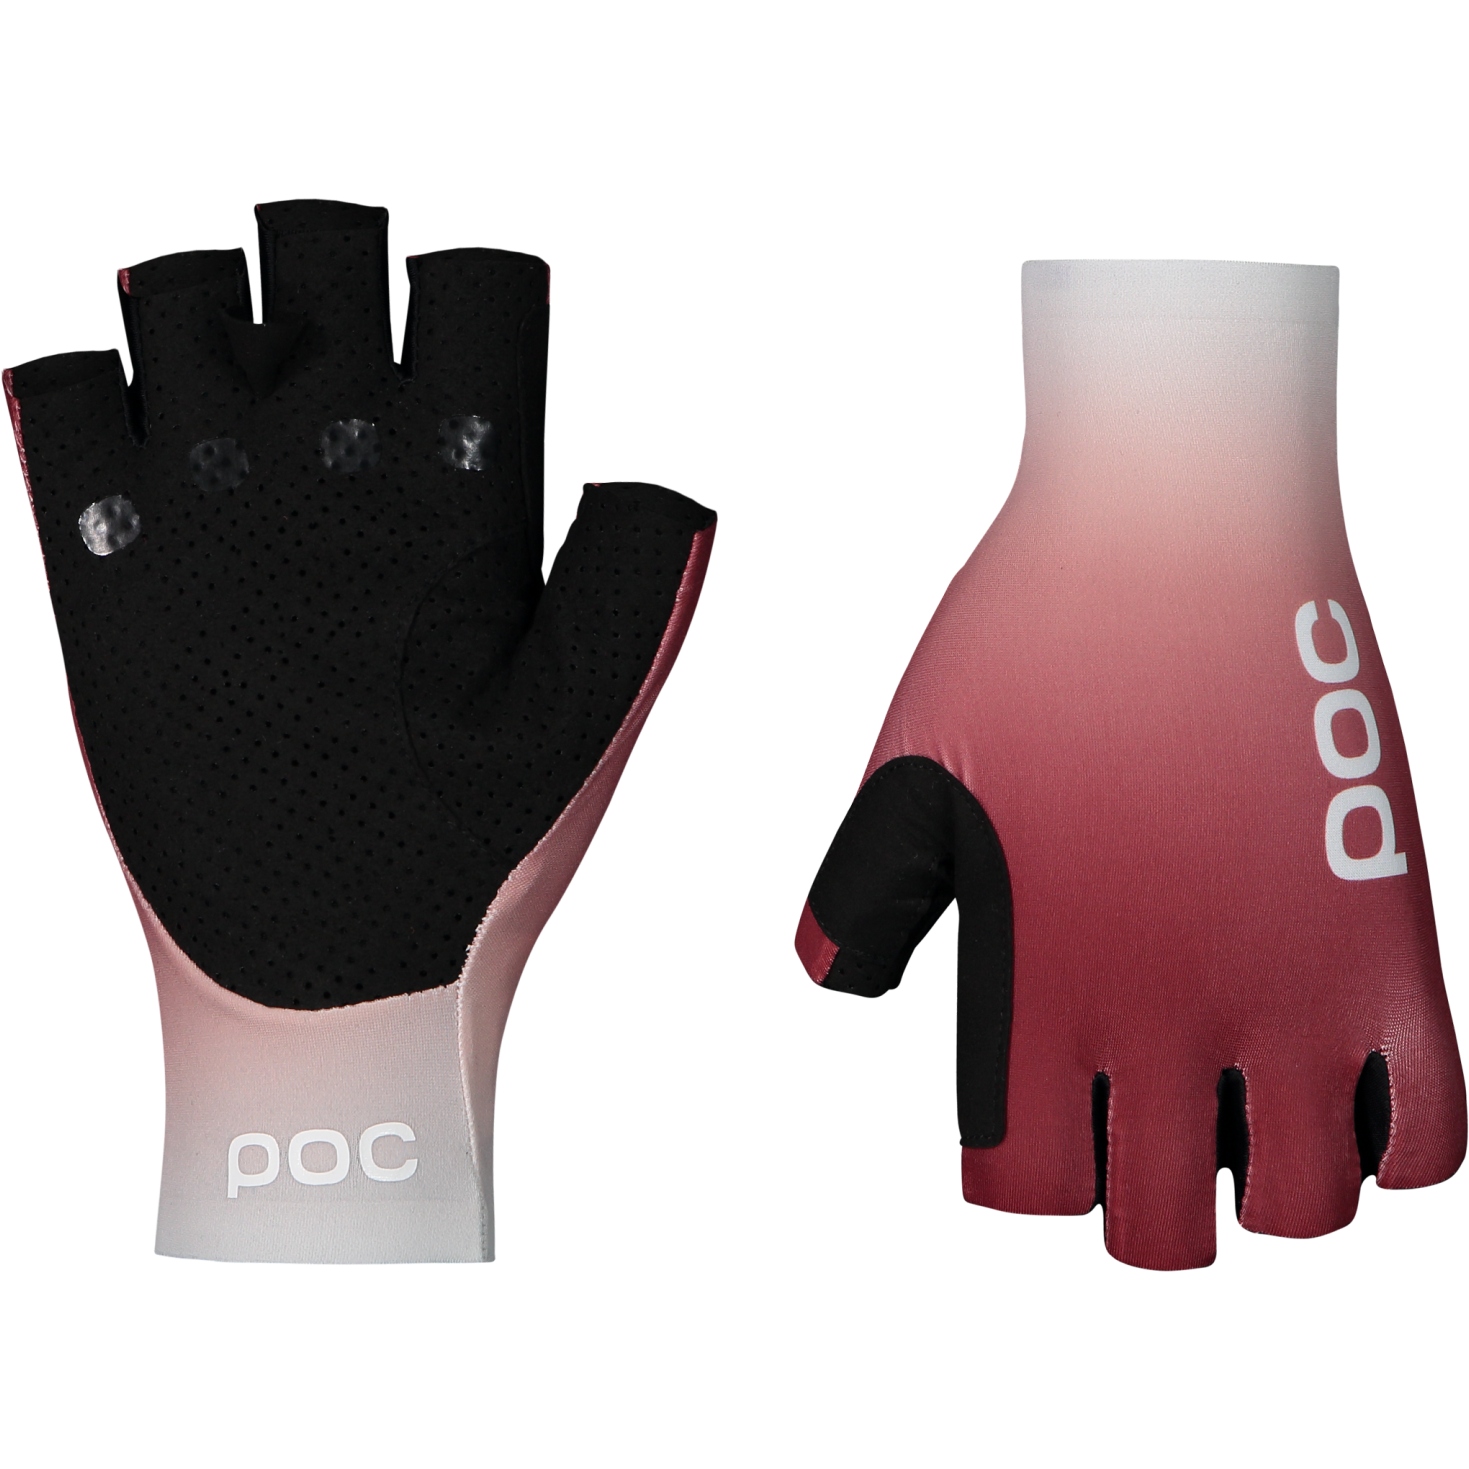 Produktbild von POC Deft Short Handschuhe - 1137 gradient garnet red